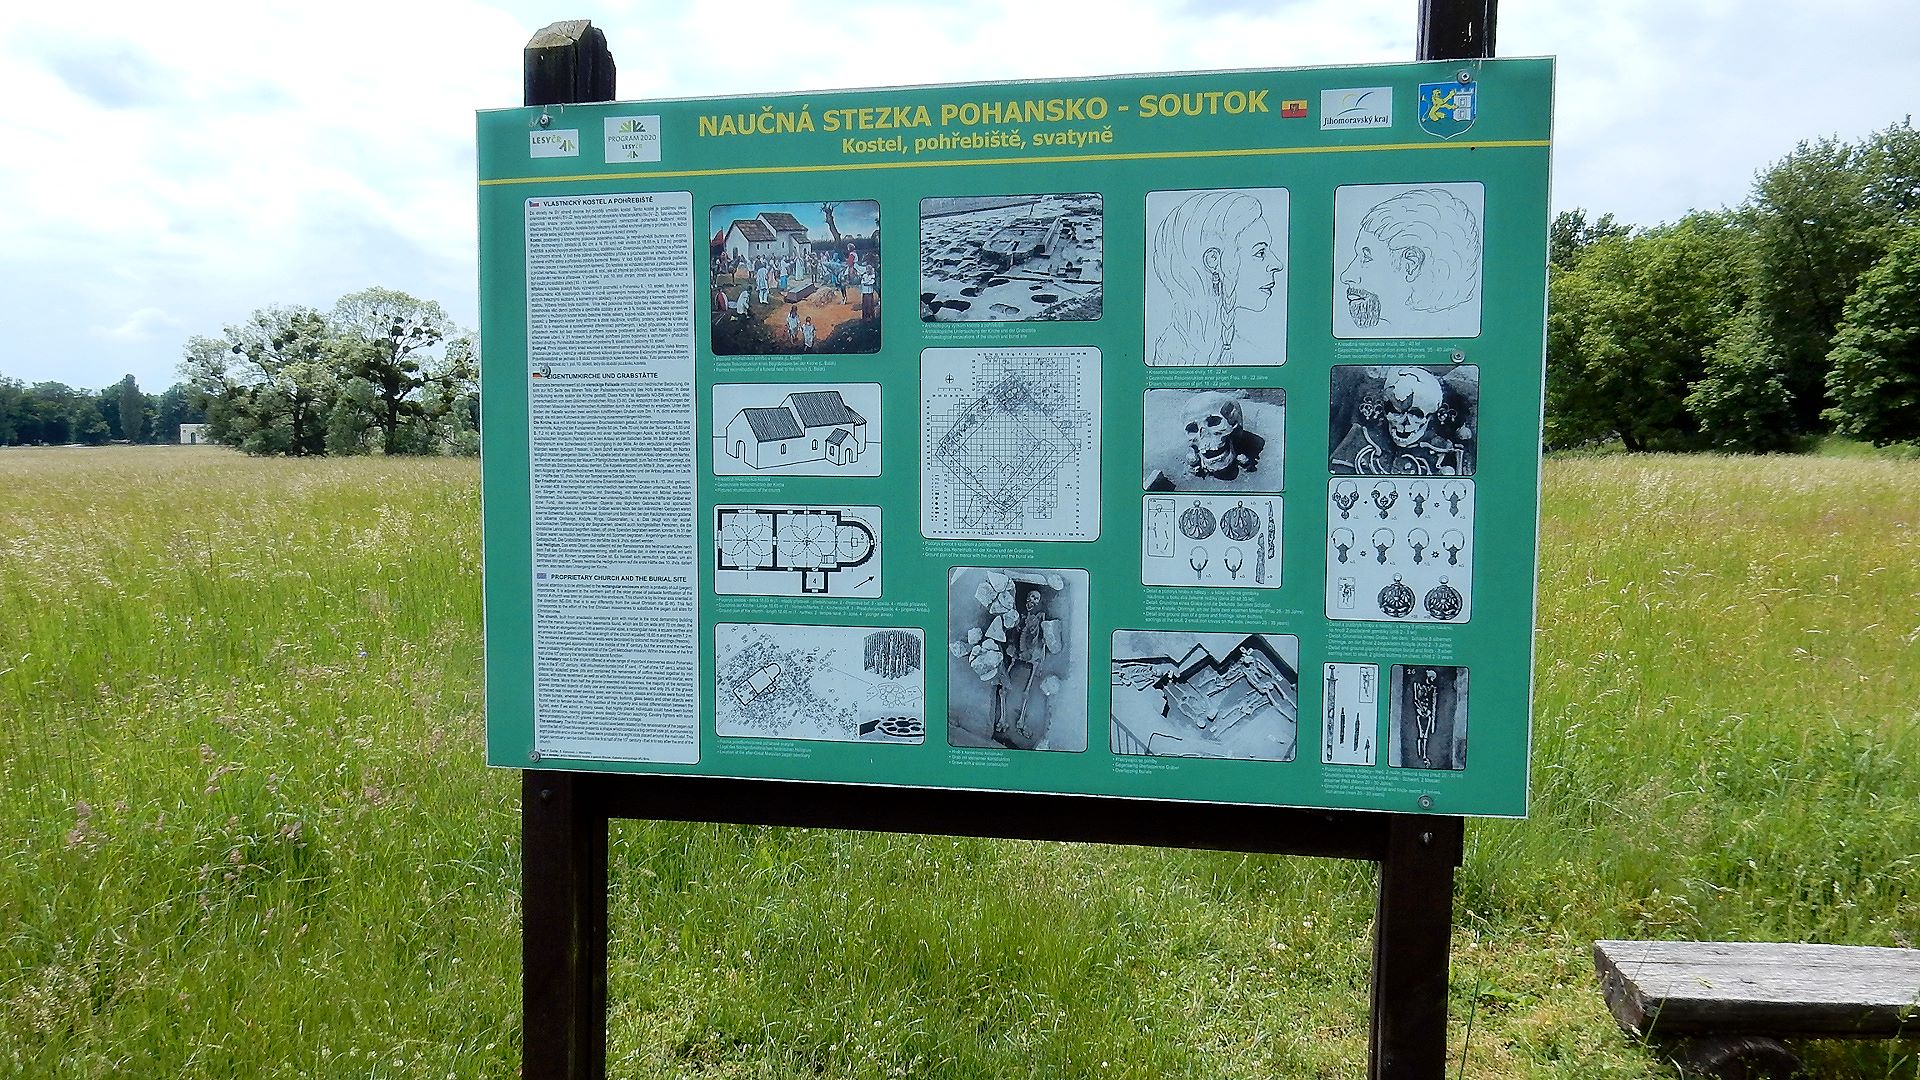 Mehr als an den Steinfundamenten erkennt man an den erklärenden Hinweistafeln die Bedeutung von Pohansko als Fundort